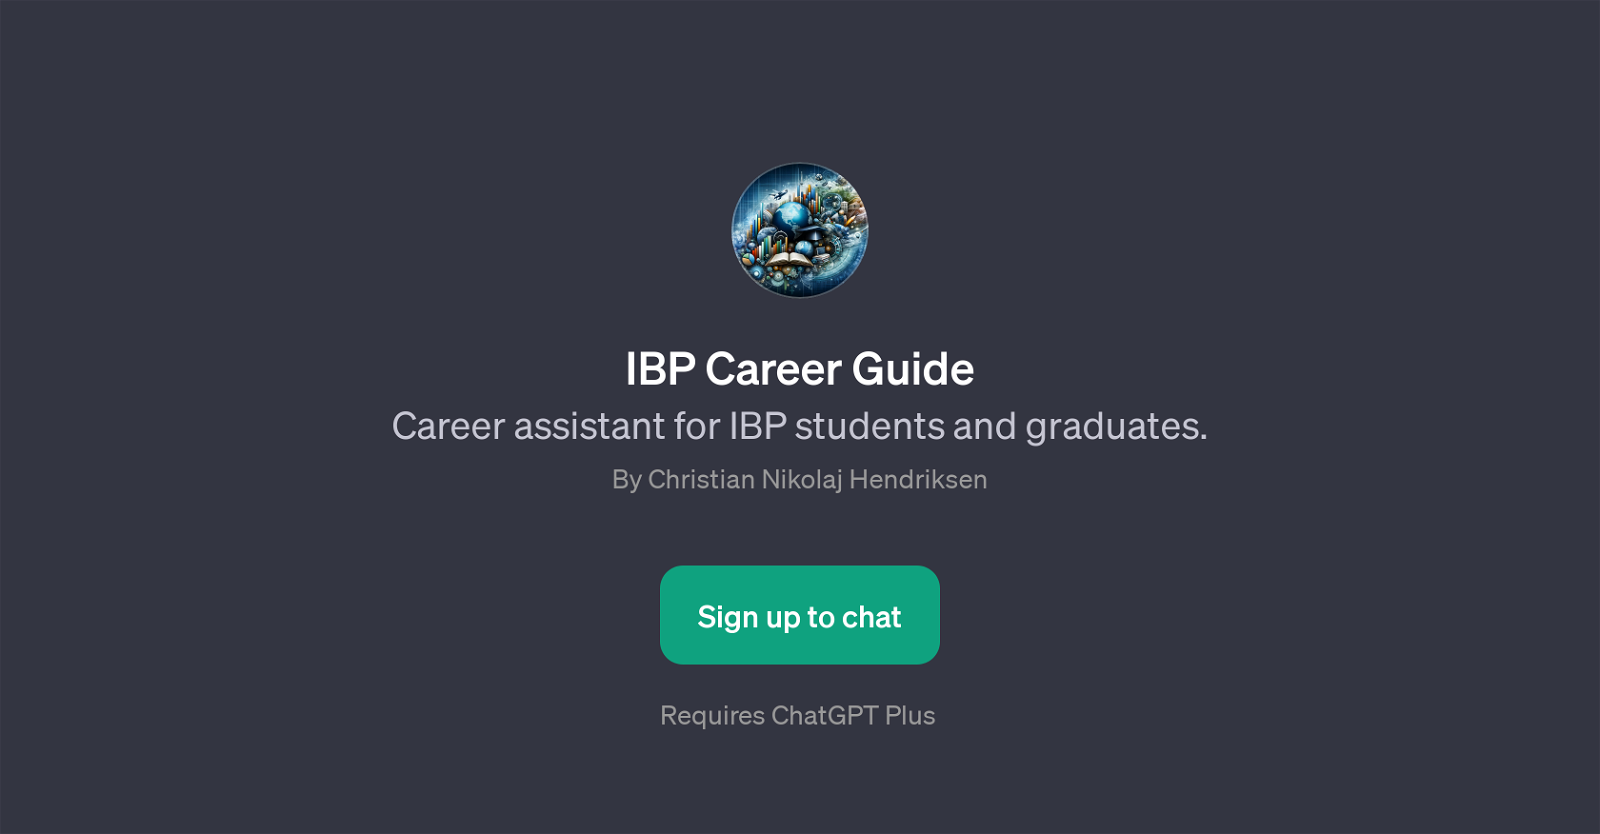 IBP Career Guide website